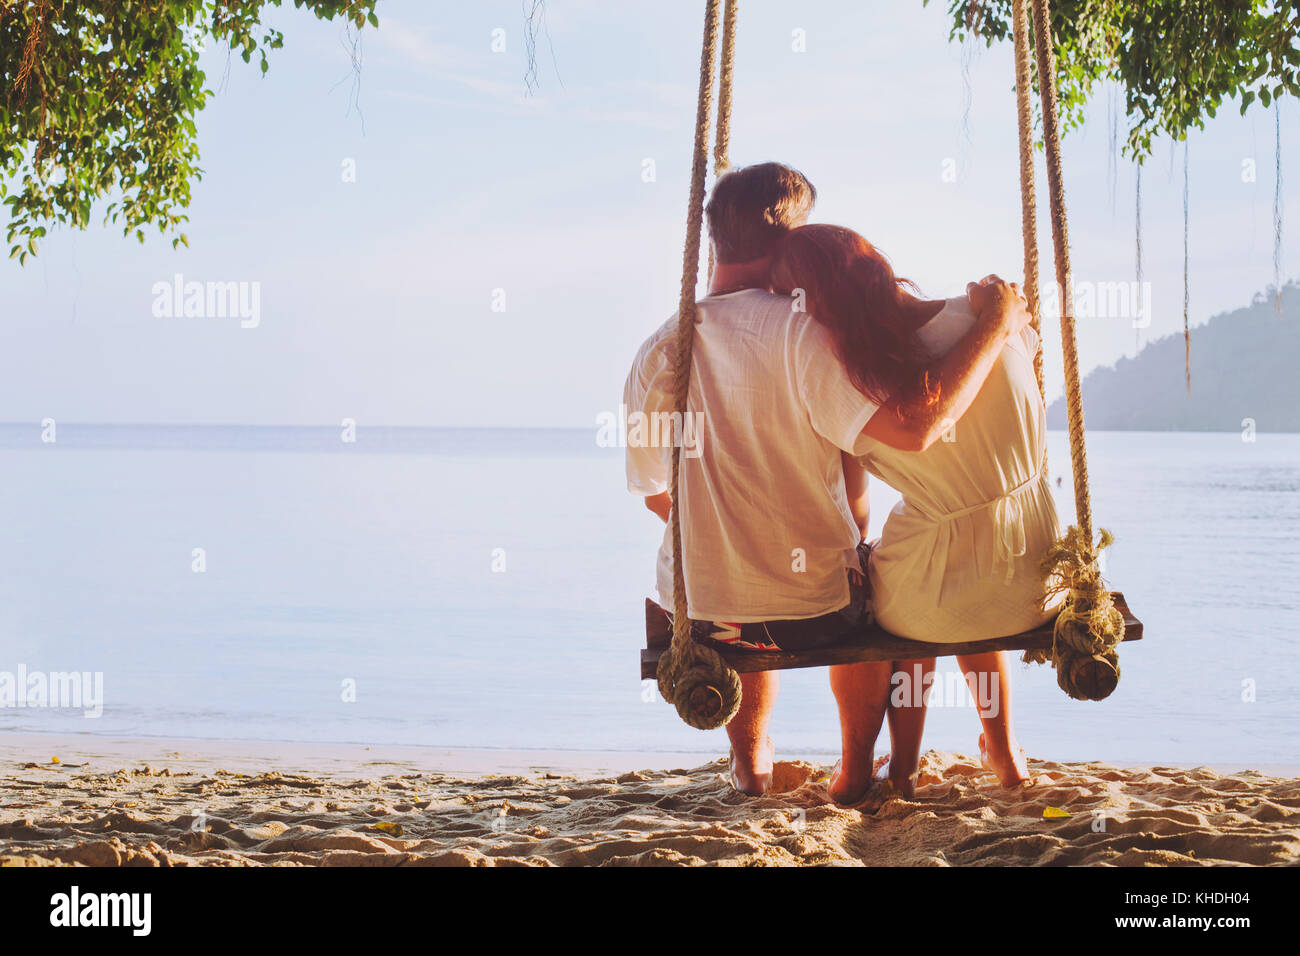 Vacances romantique pour deux, affectionate couple sur la plage sur swing, silhouette of man hugging woman Banque D'Images